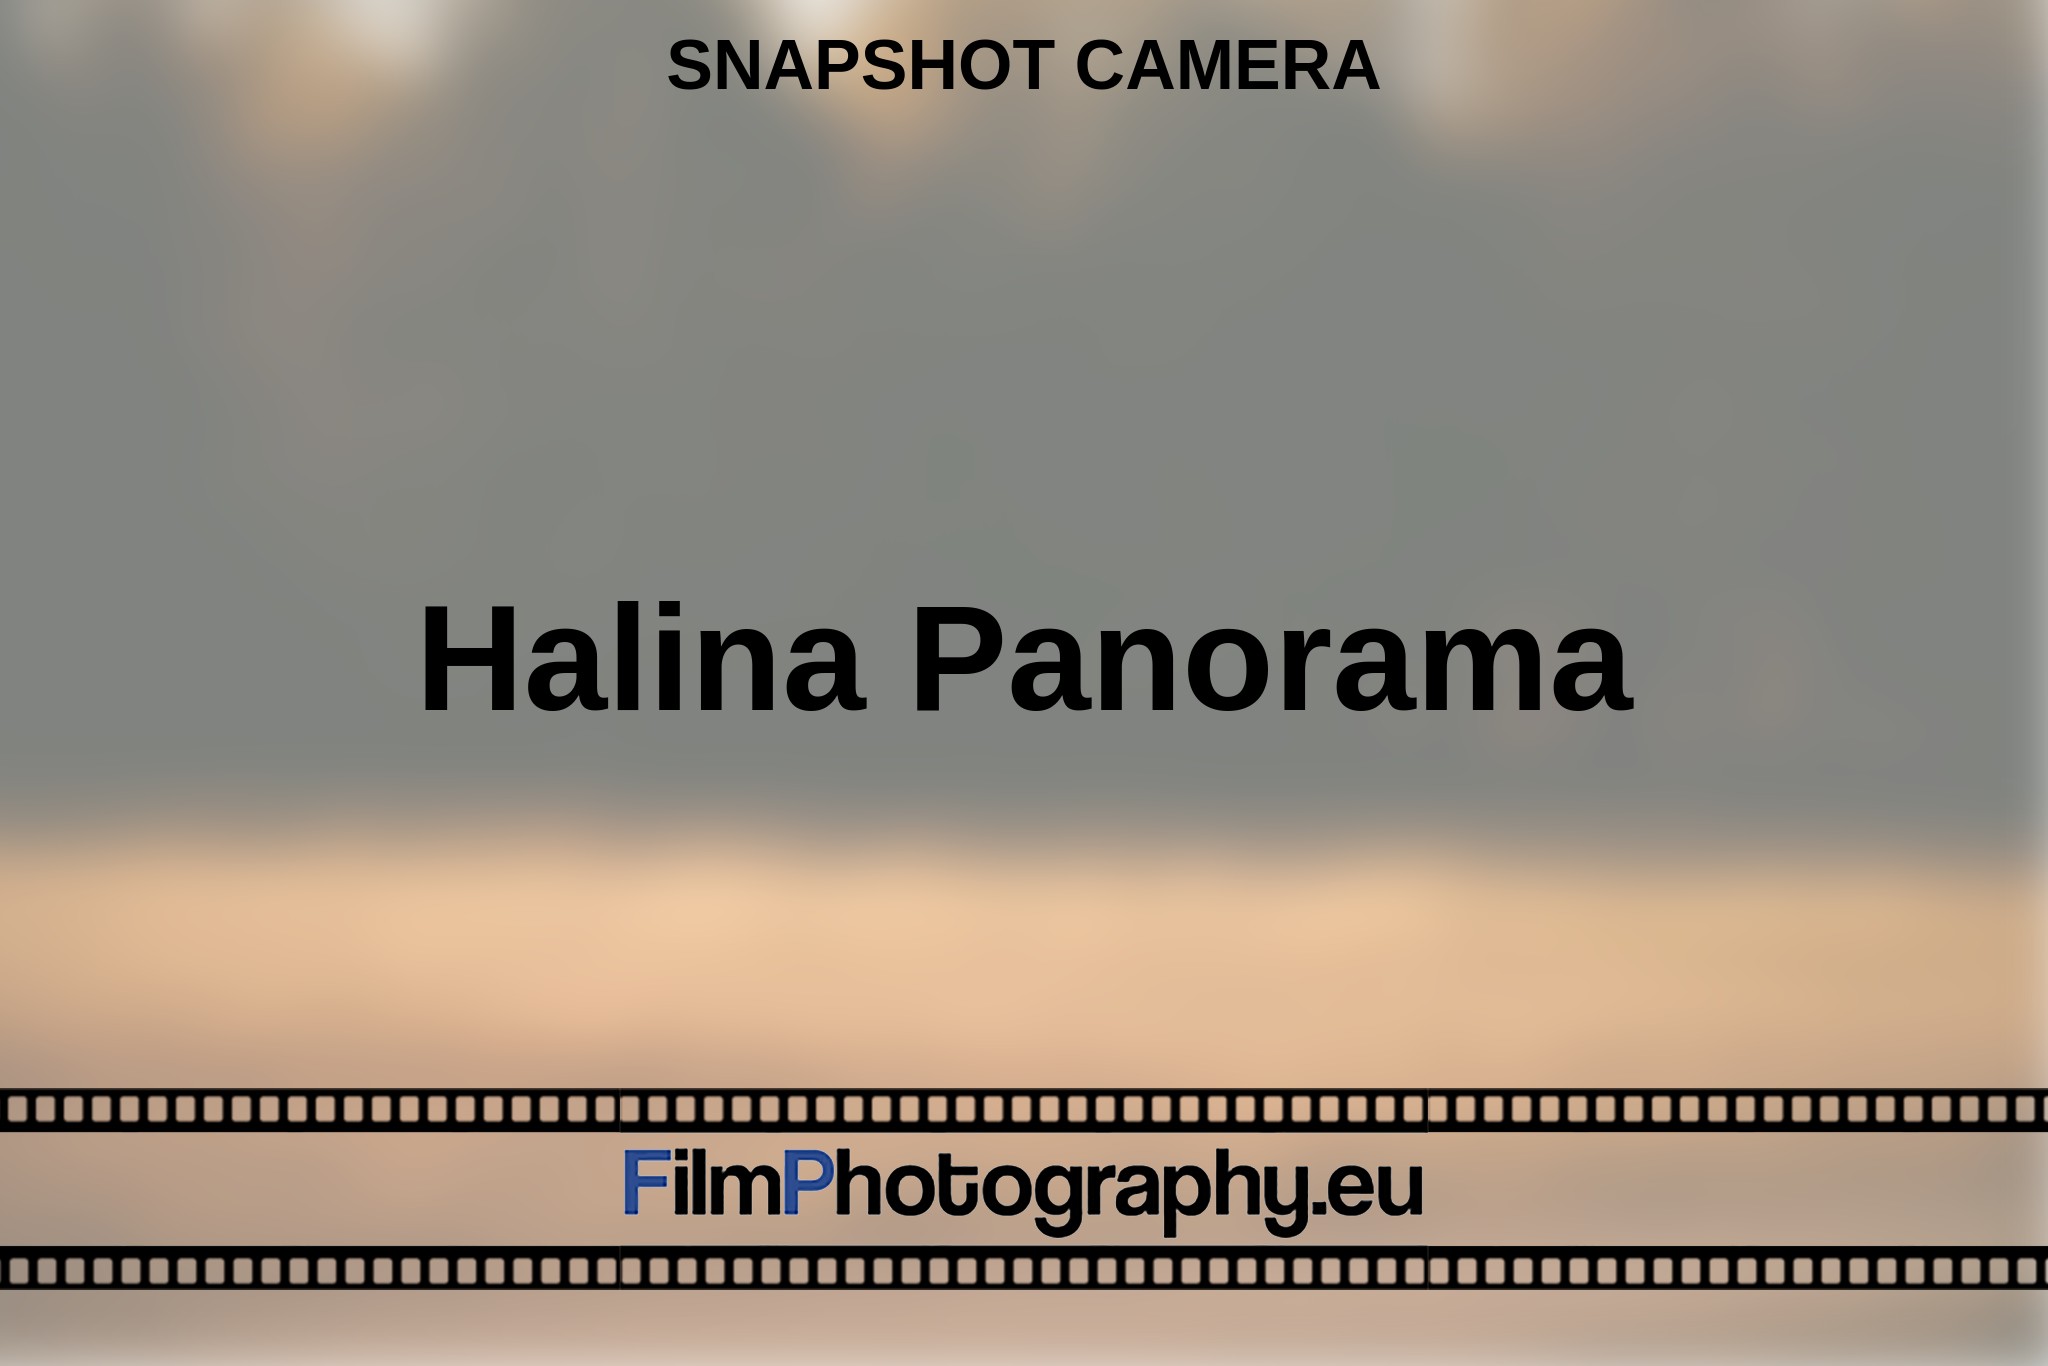 halina-panorama-snapshot-camera-en-bnv.jpg